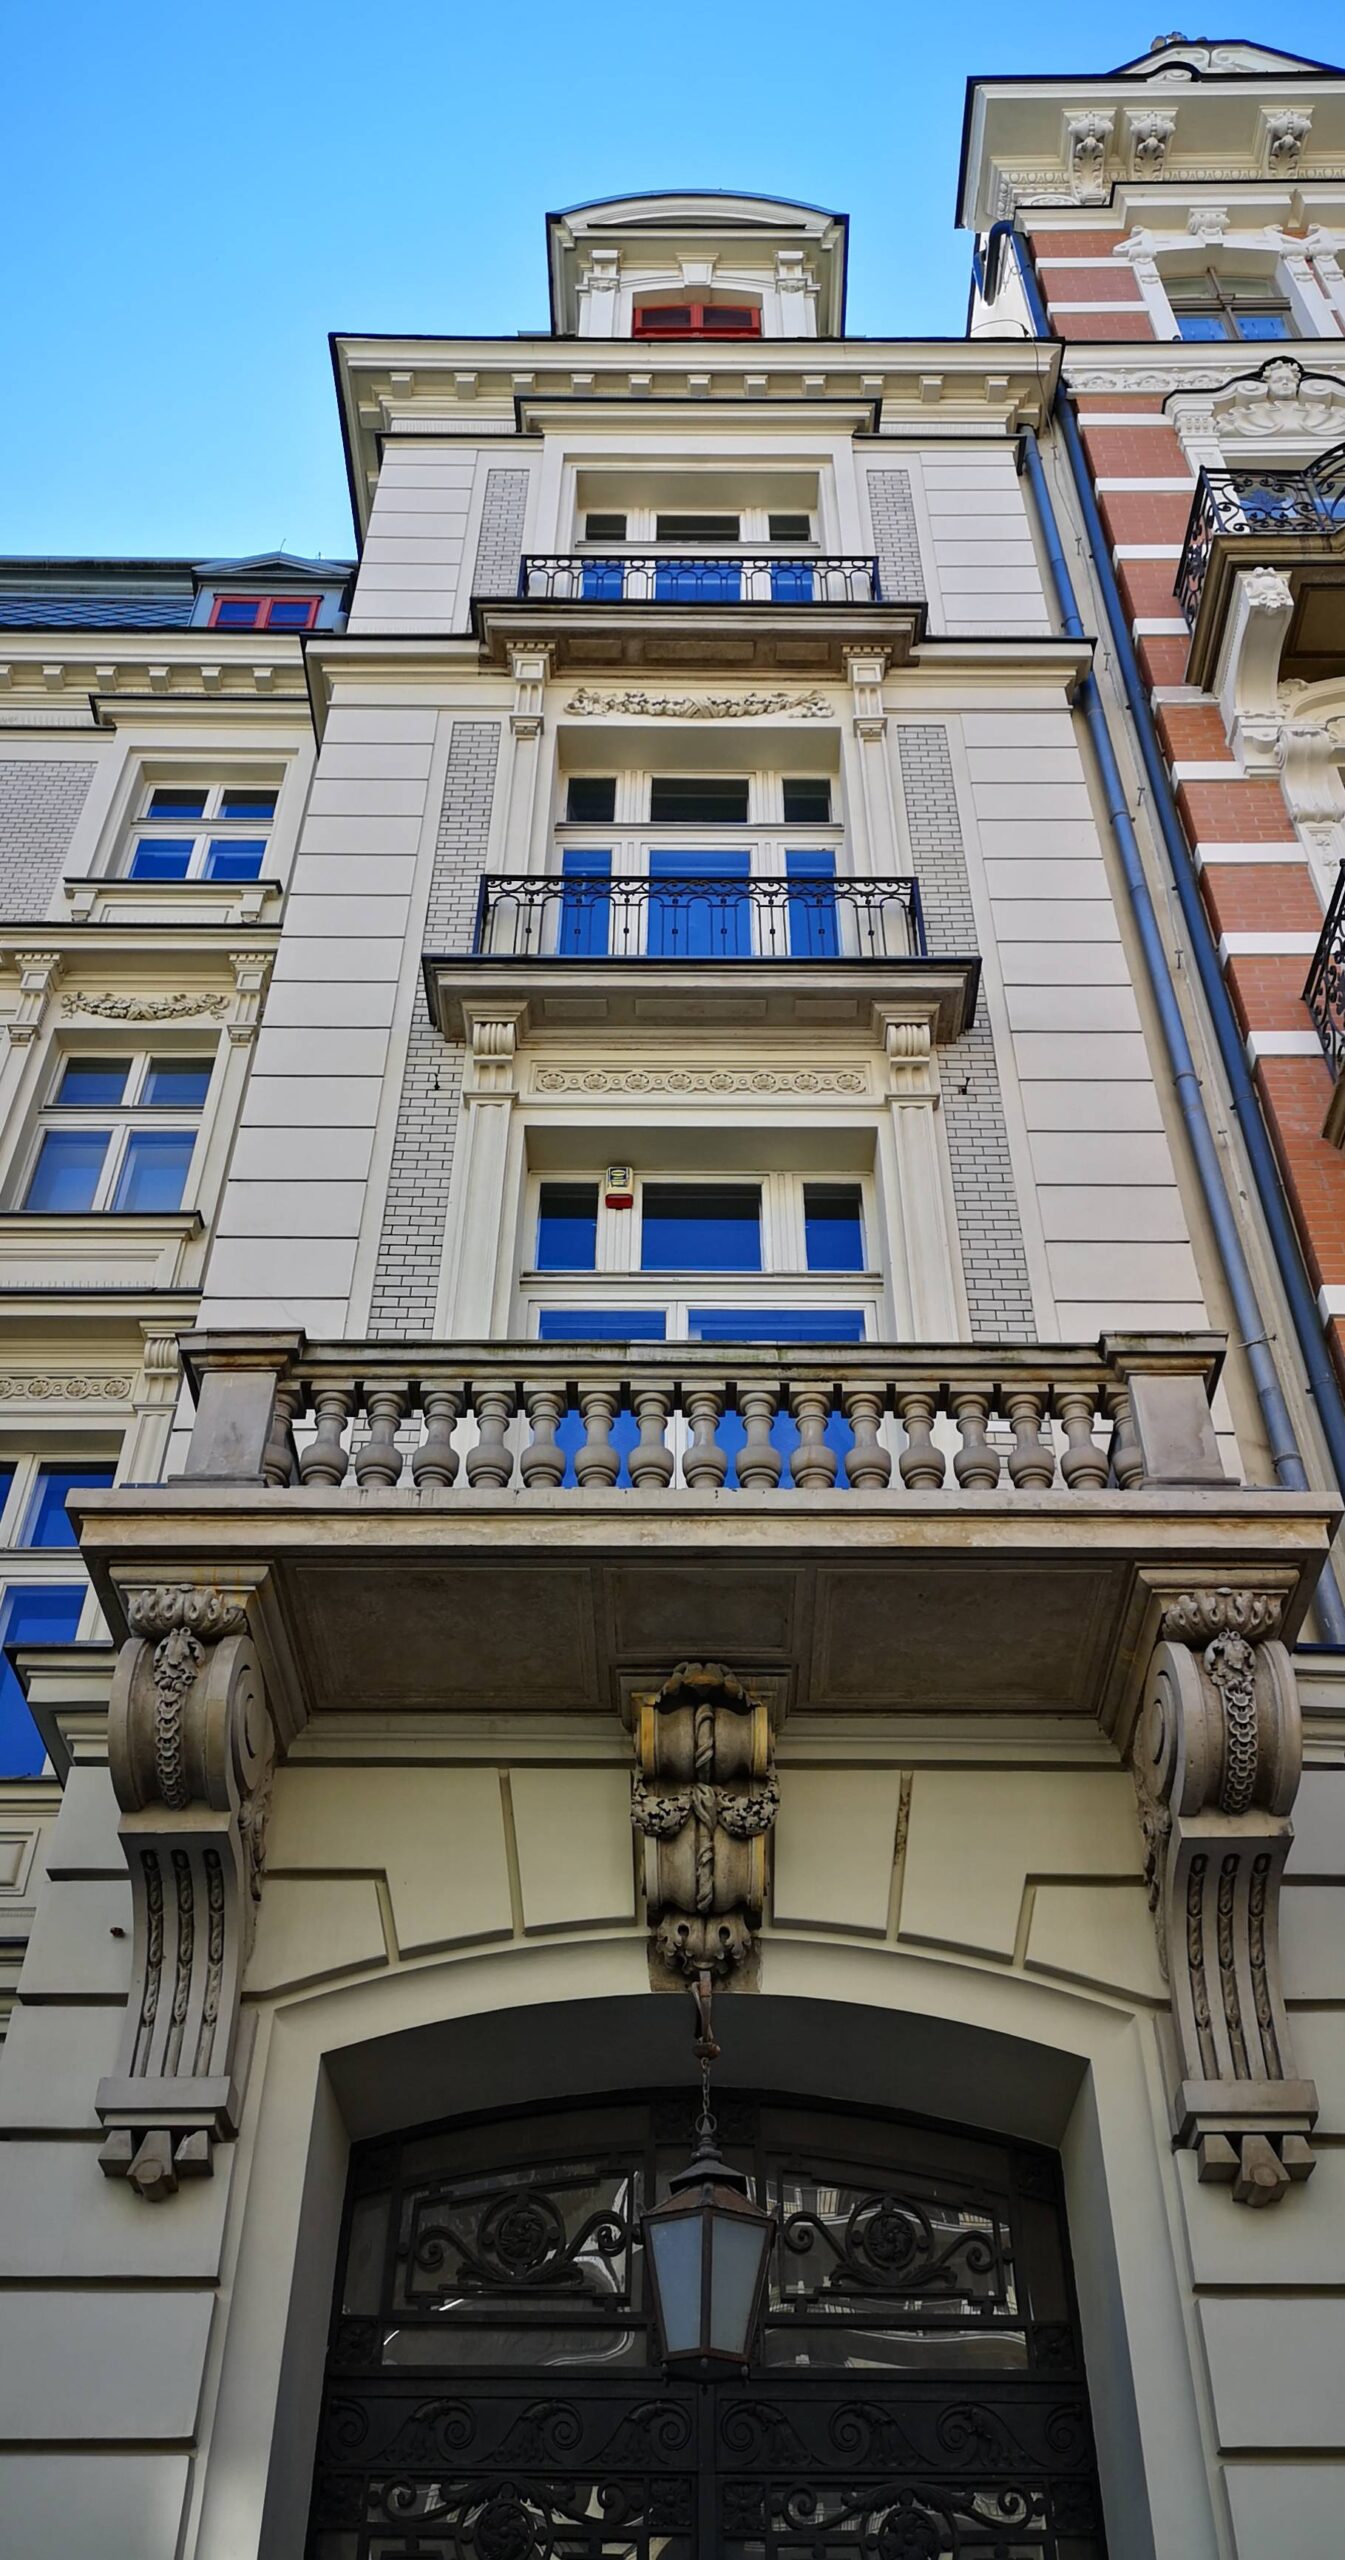 Dom frontowy. Ryzalit zachodni wraz z balkonem. Fot. Danuta Chodowiec 2022 r., źródło: AOD III.